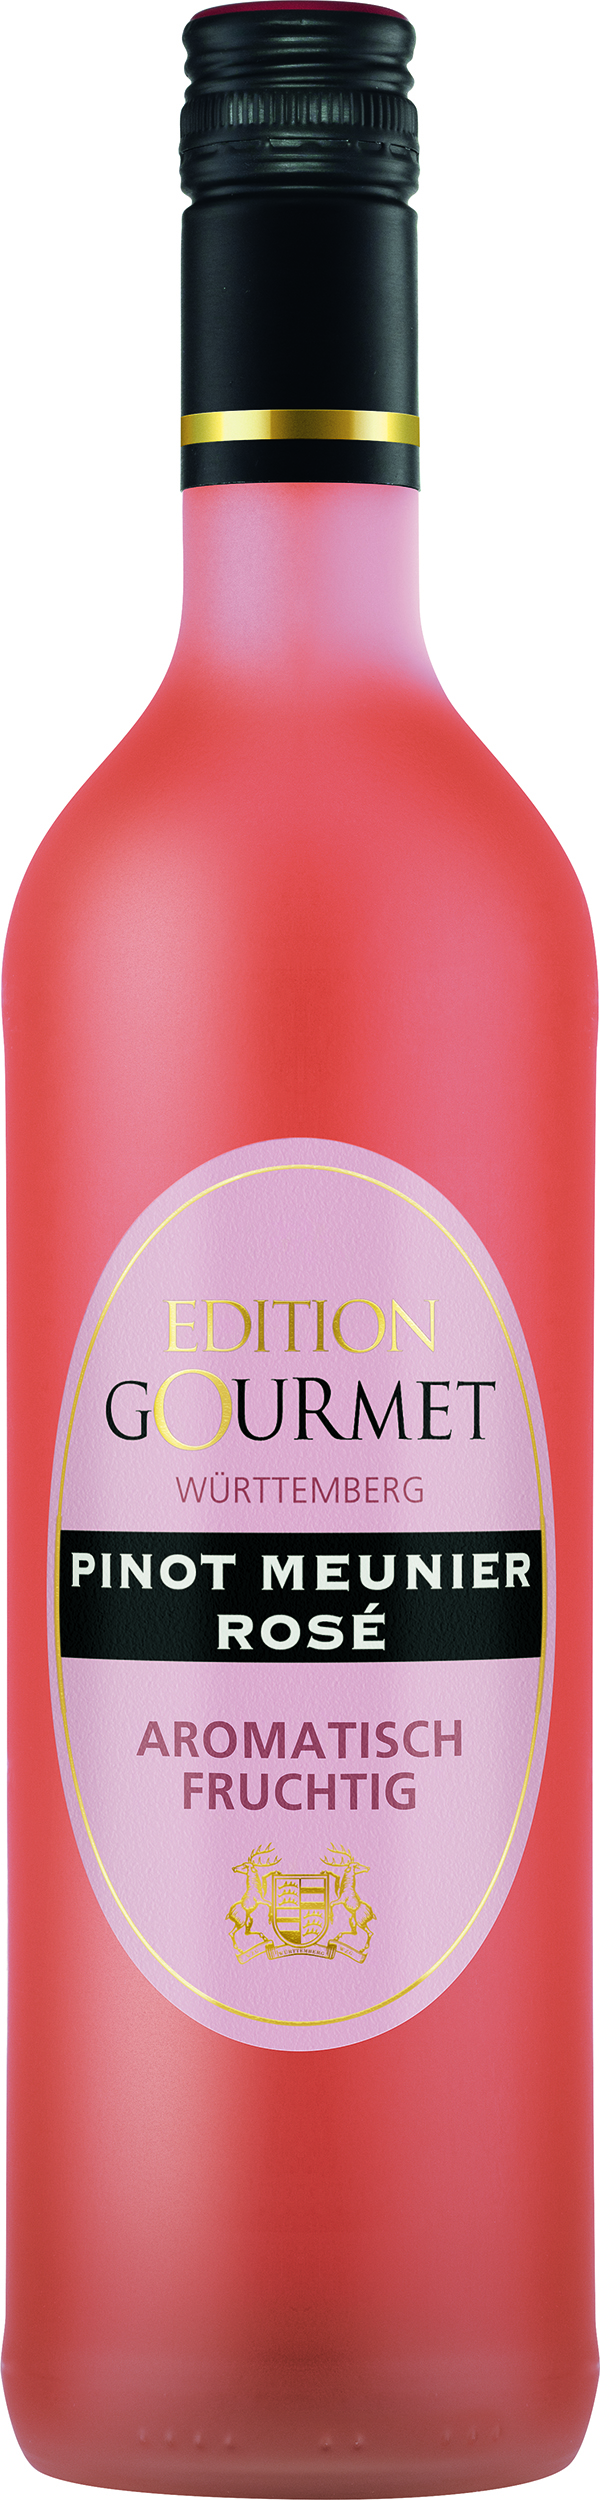 WZG Edition Gourmet Pinot Meunier Rosé 0,75 L Aromatisch Fruchtig - Roséwein, halbtrocken, Württemberg